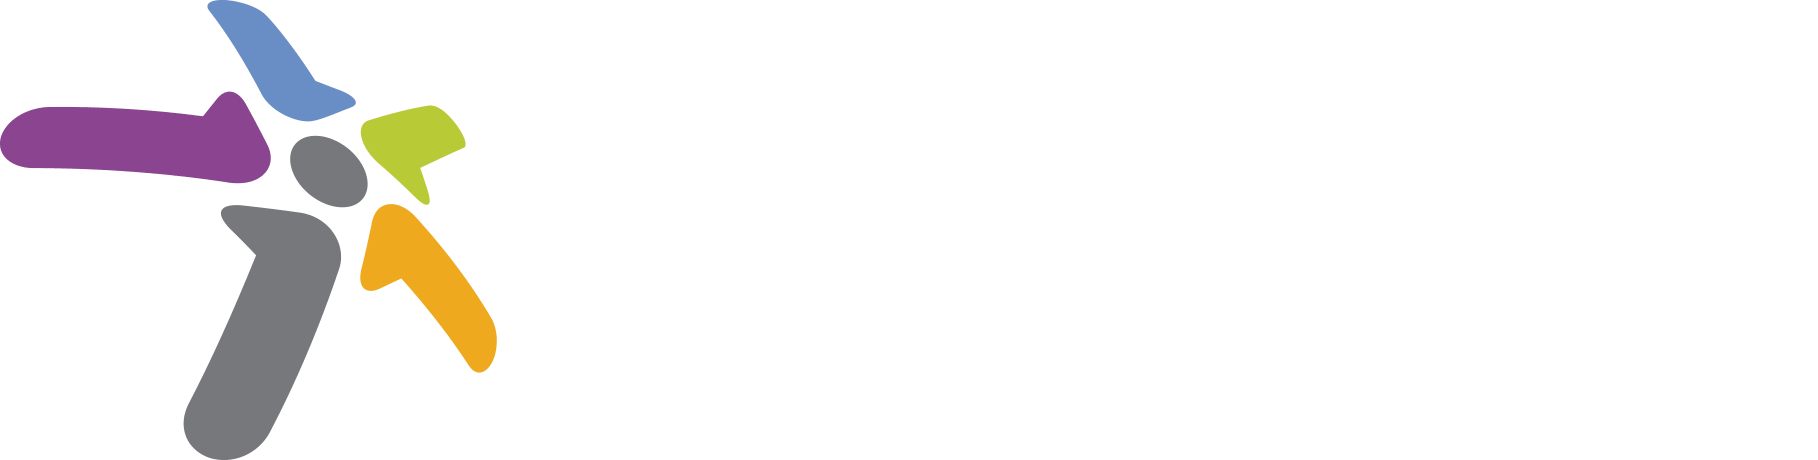 WSIS Prizes 2018 banner logo